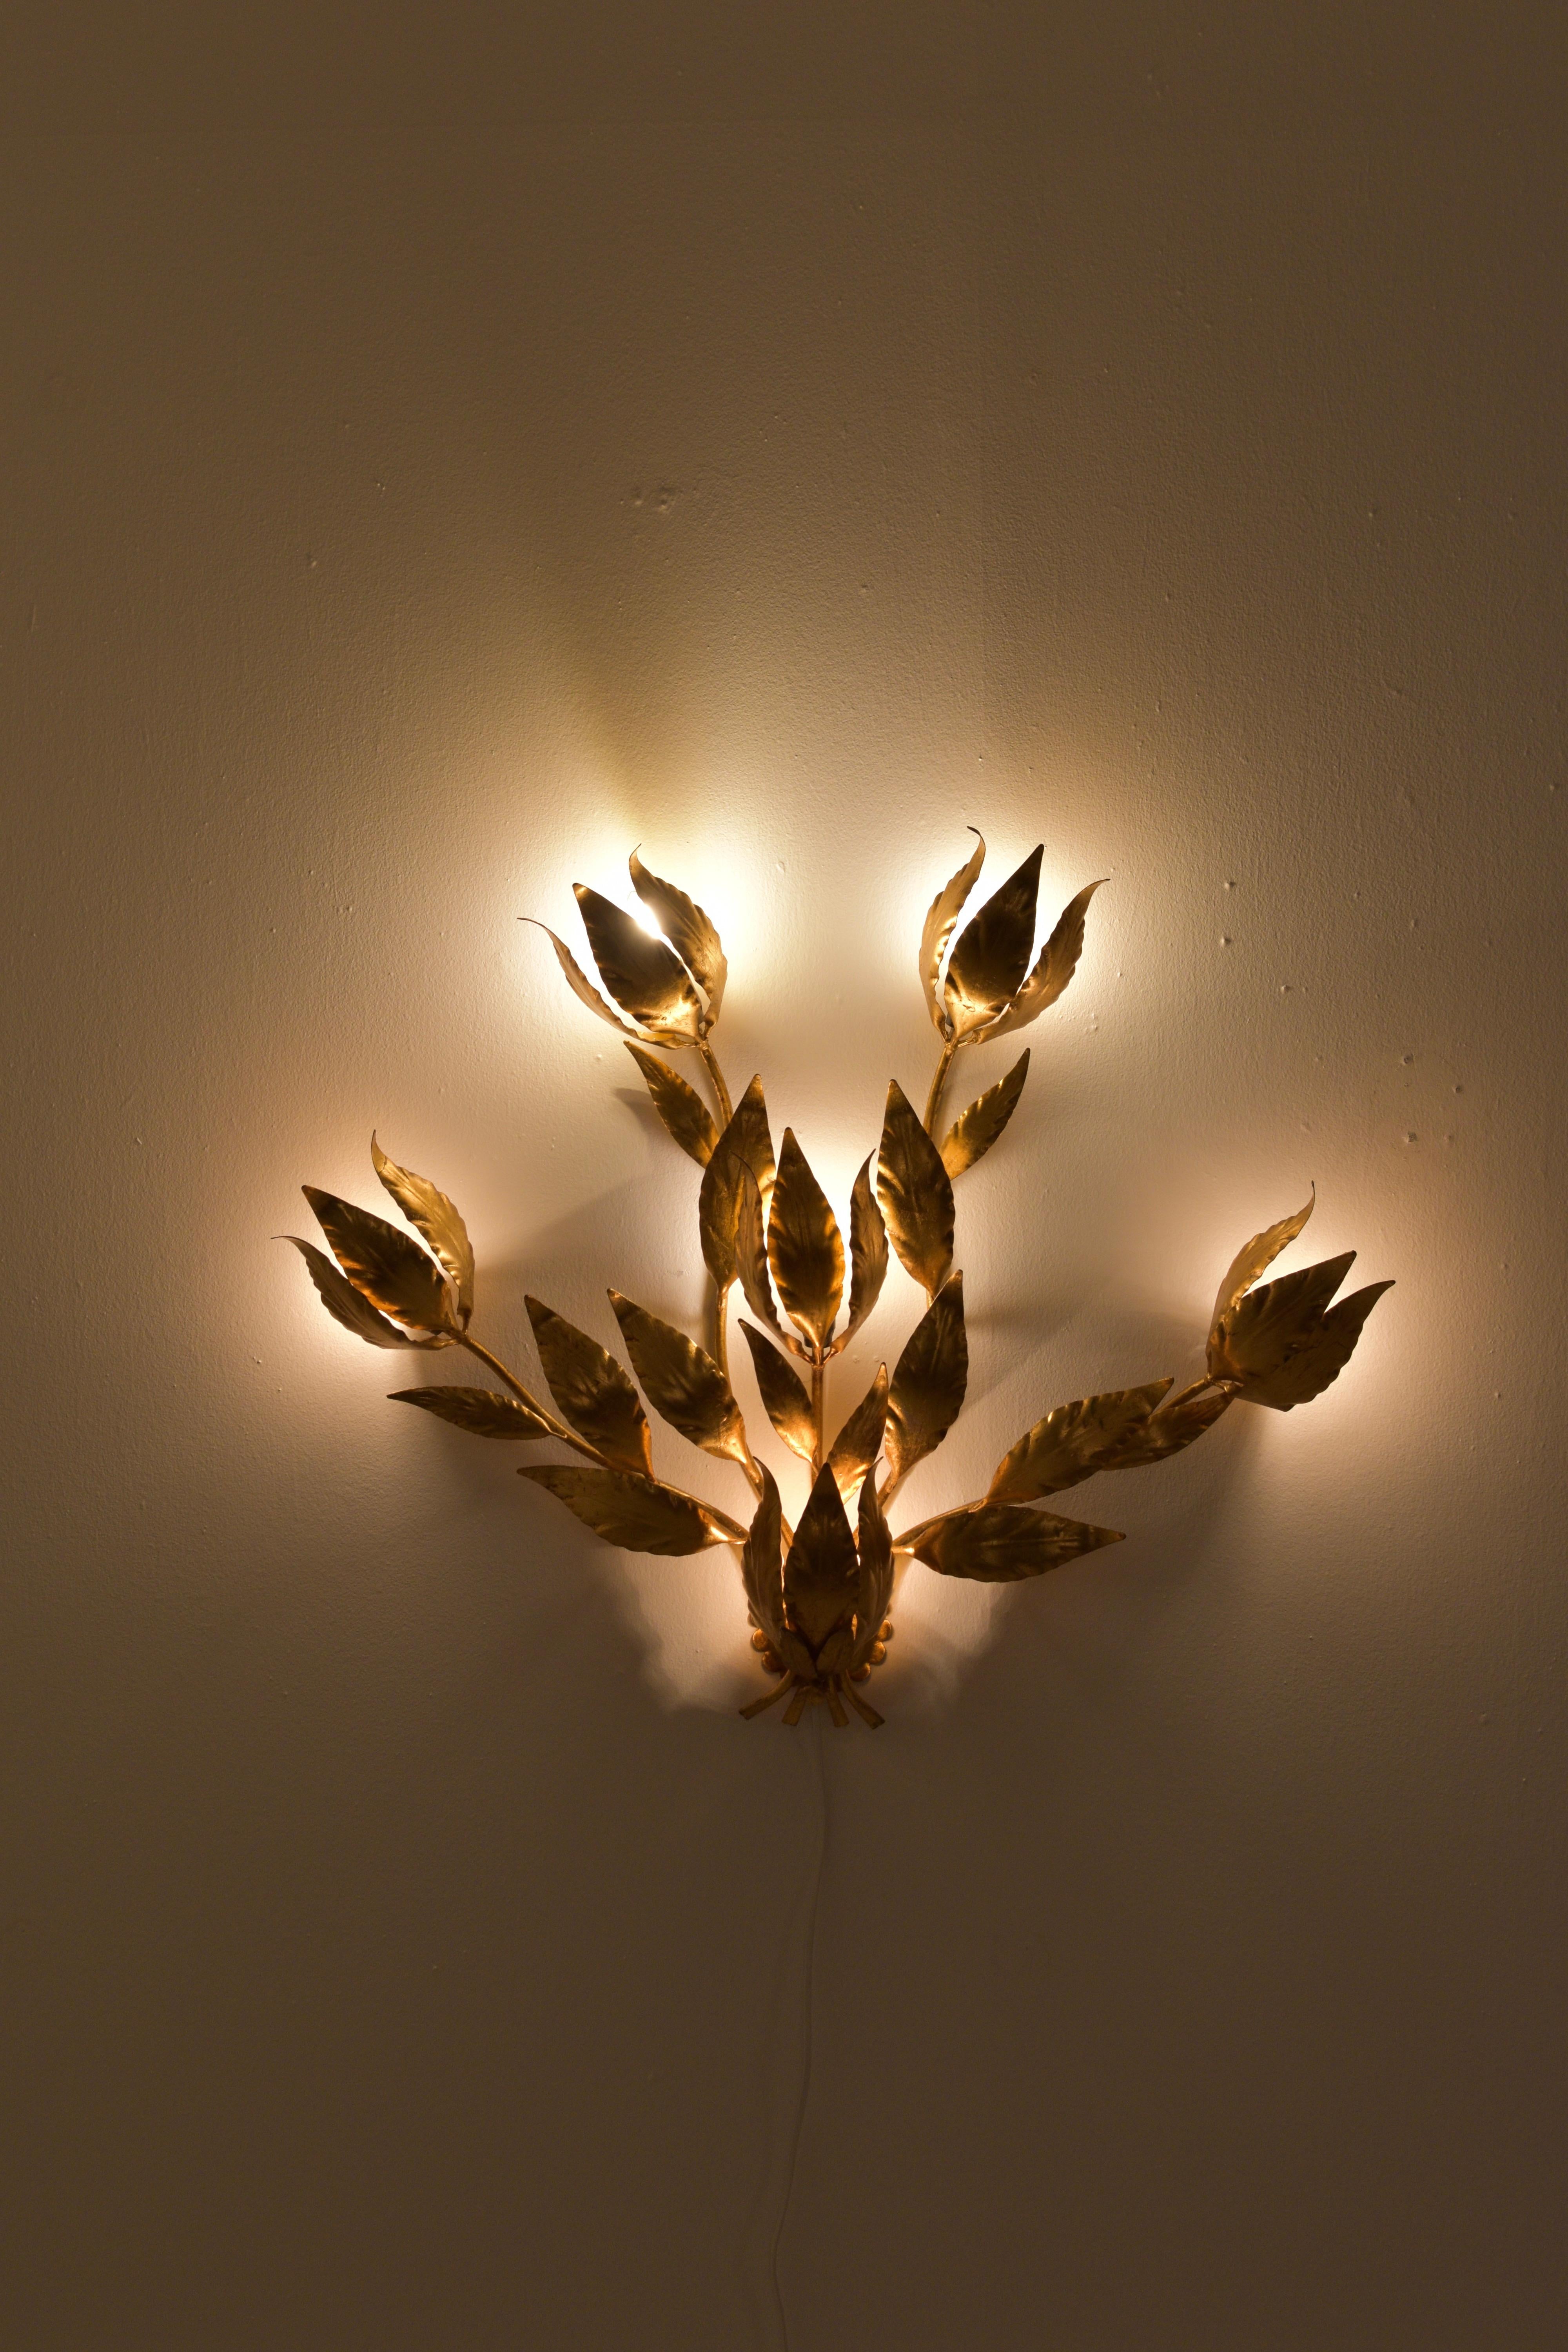 Die Wandlampe hat vier Äste mit Blättern. Hinter den Blättern verbergen sich fünf Lichtquellen, die ein fantastisches Leuchten erzeugen. Diese Wandleuchte ist wie ein Schmuckstück für Ihre Wand. Das ist wirklich ein Highlight für Ihr Zuhause!